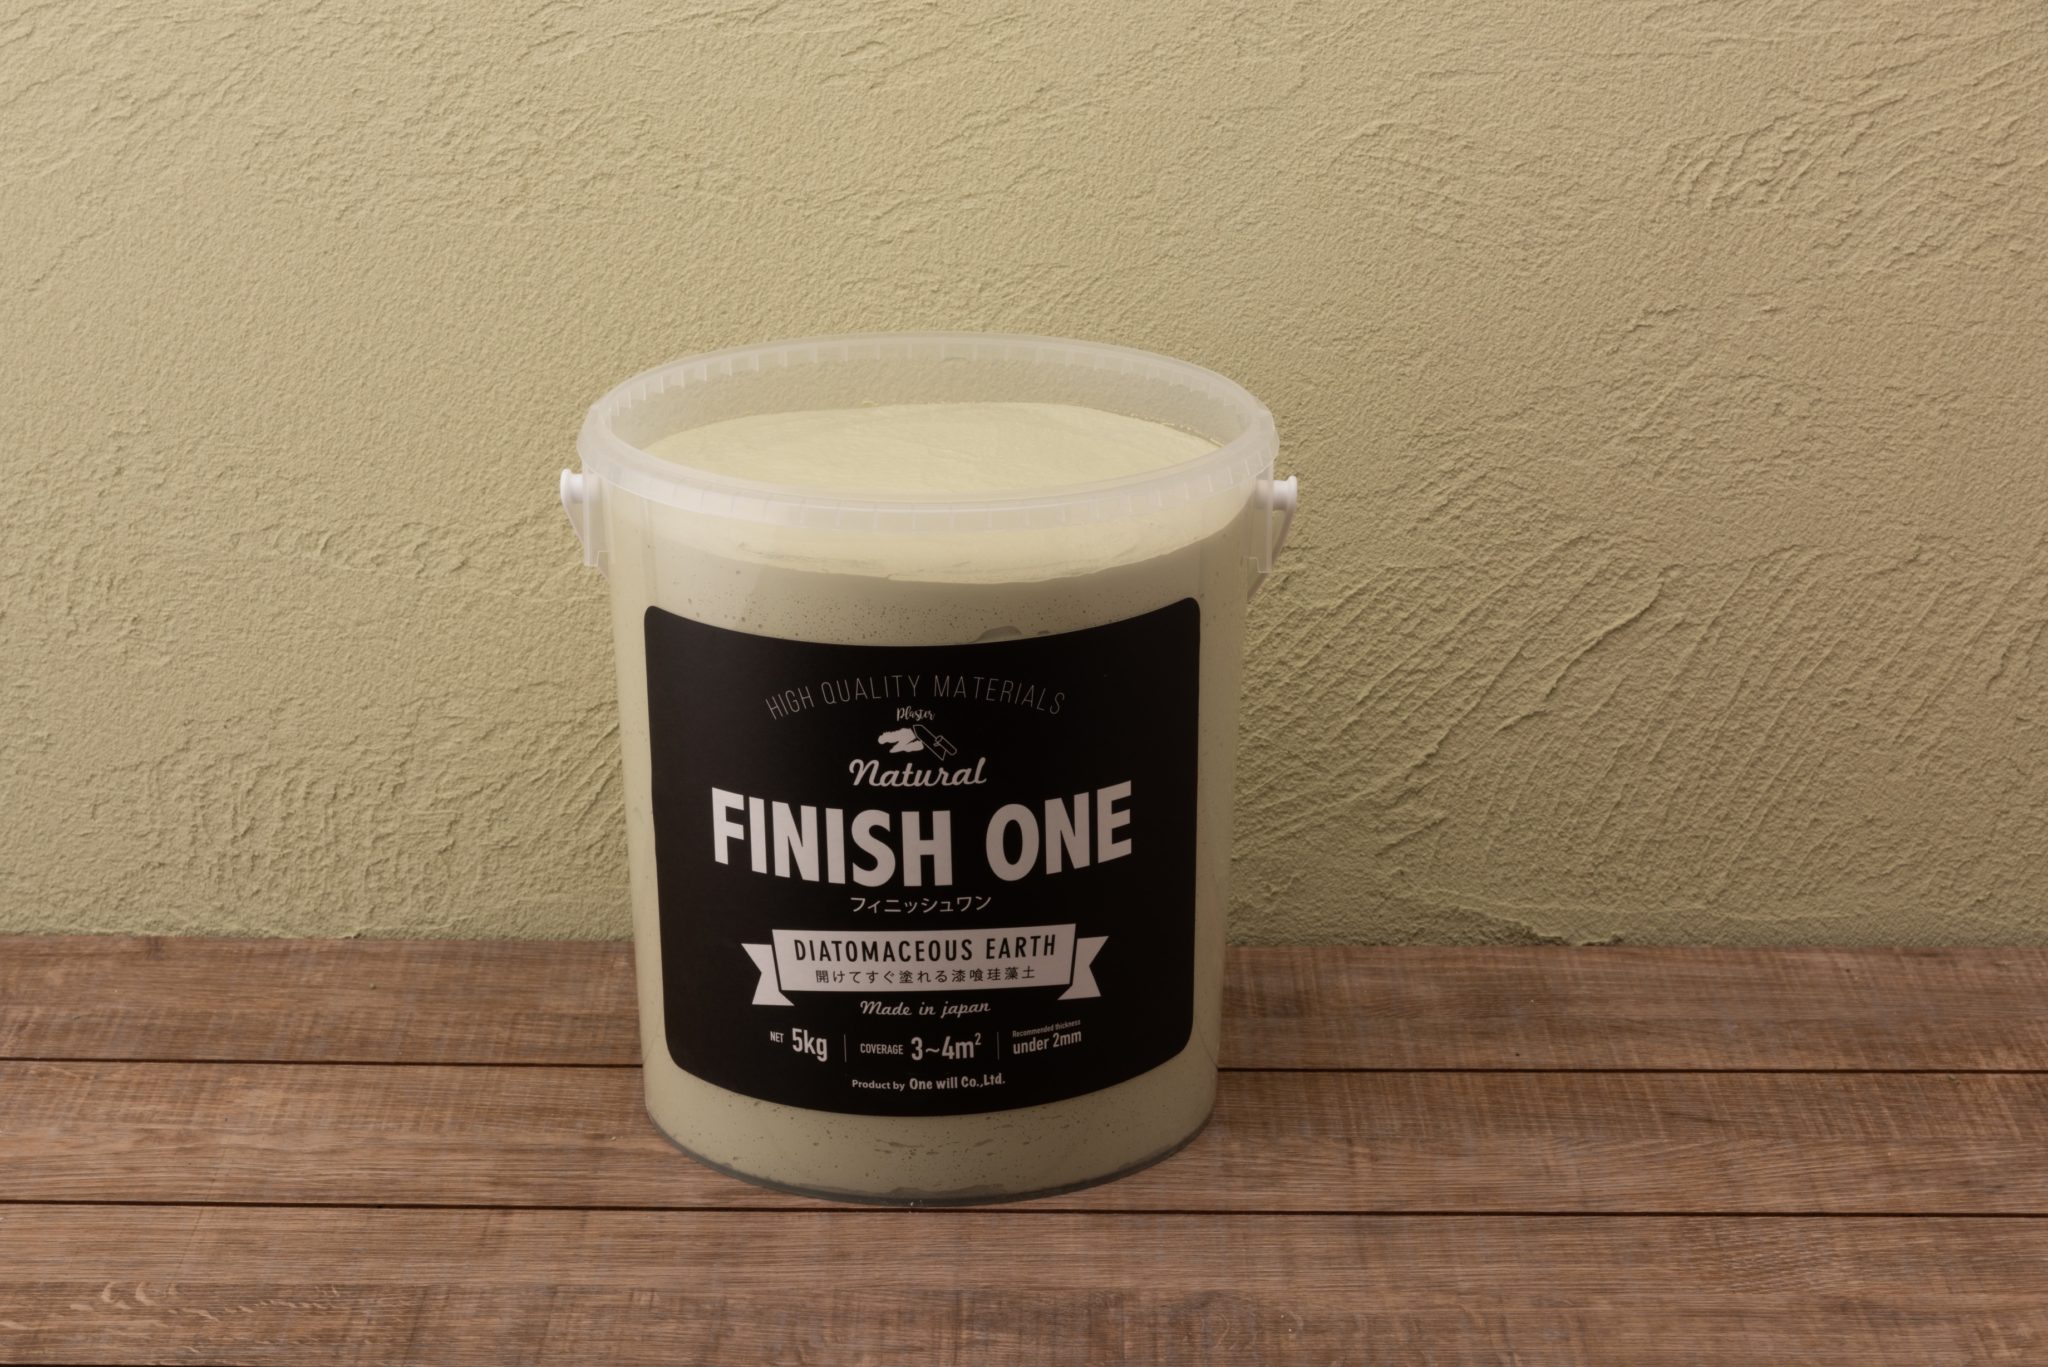 FINISH ONE 珪藻土 缶 ライトカーキ 自然由来珪藻土壁材ケイソウくん